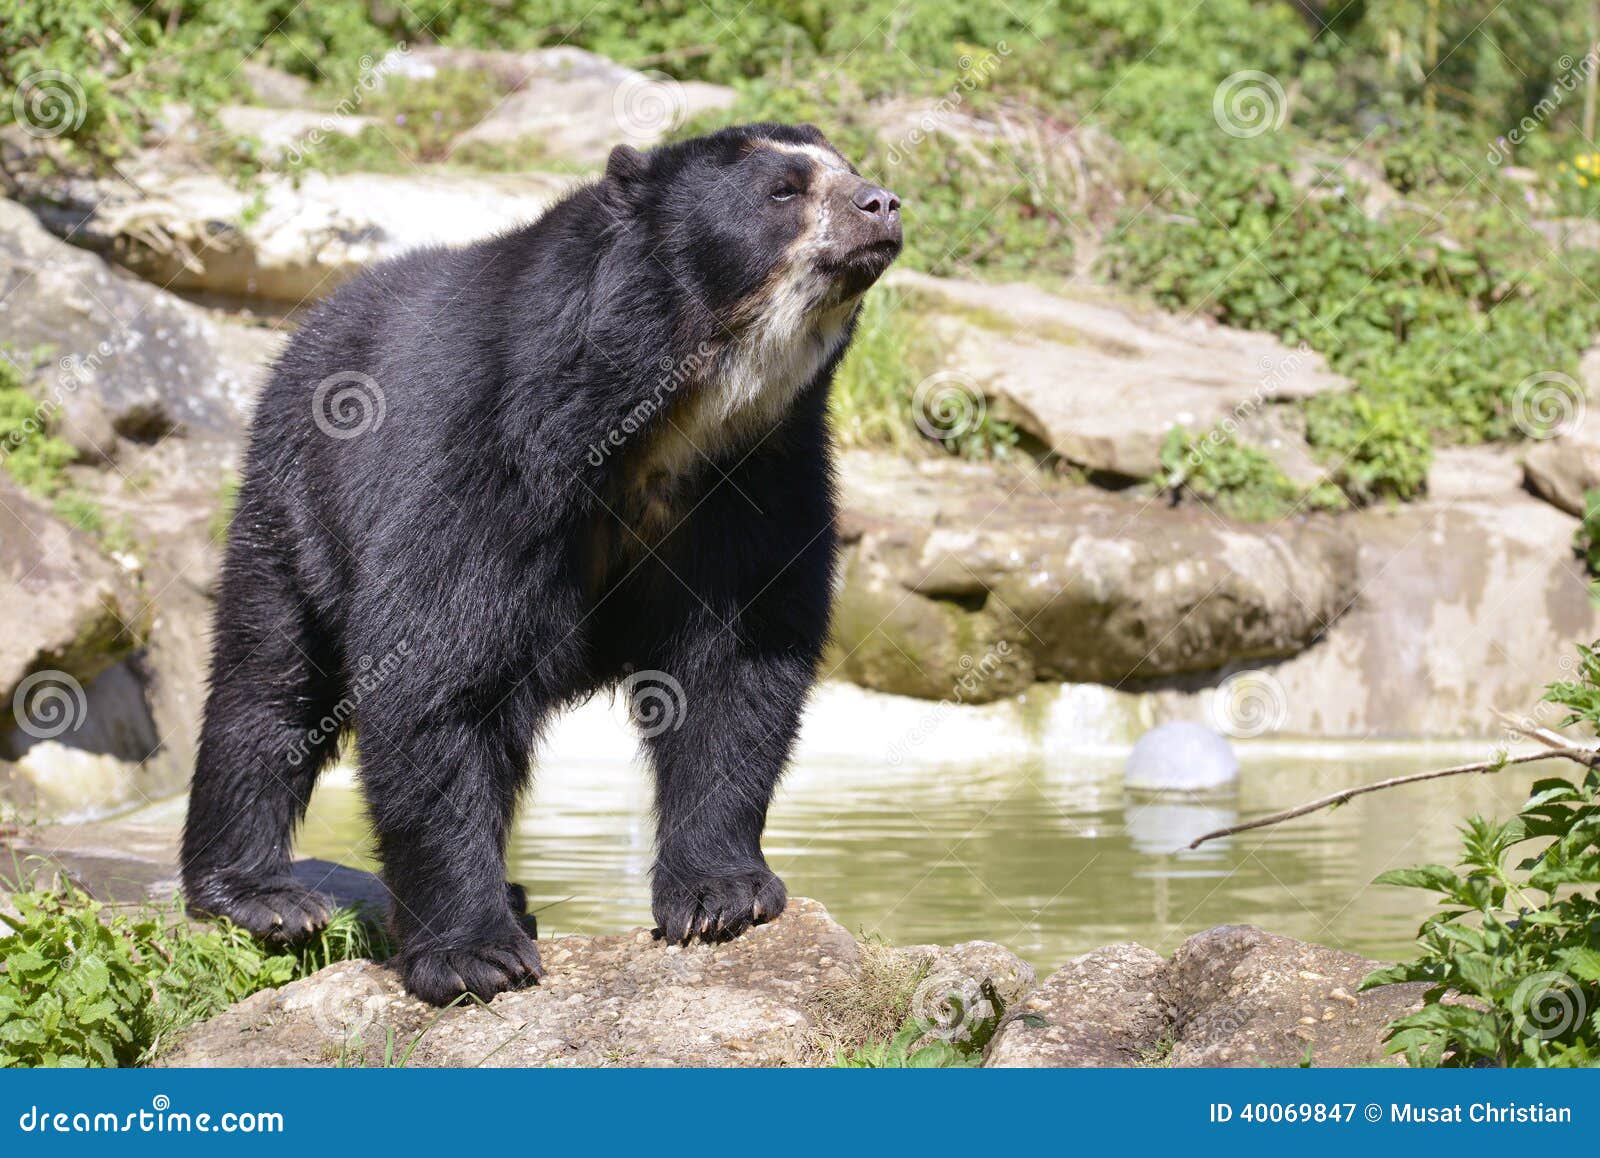 andean bear